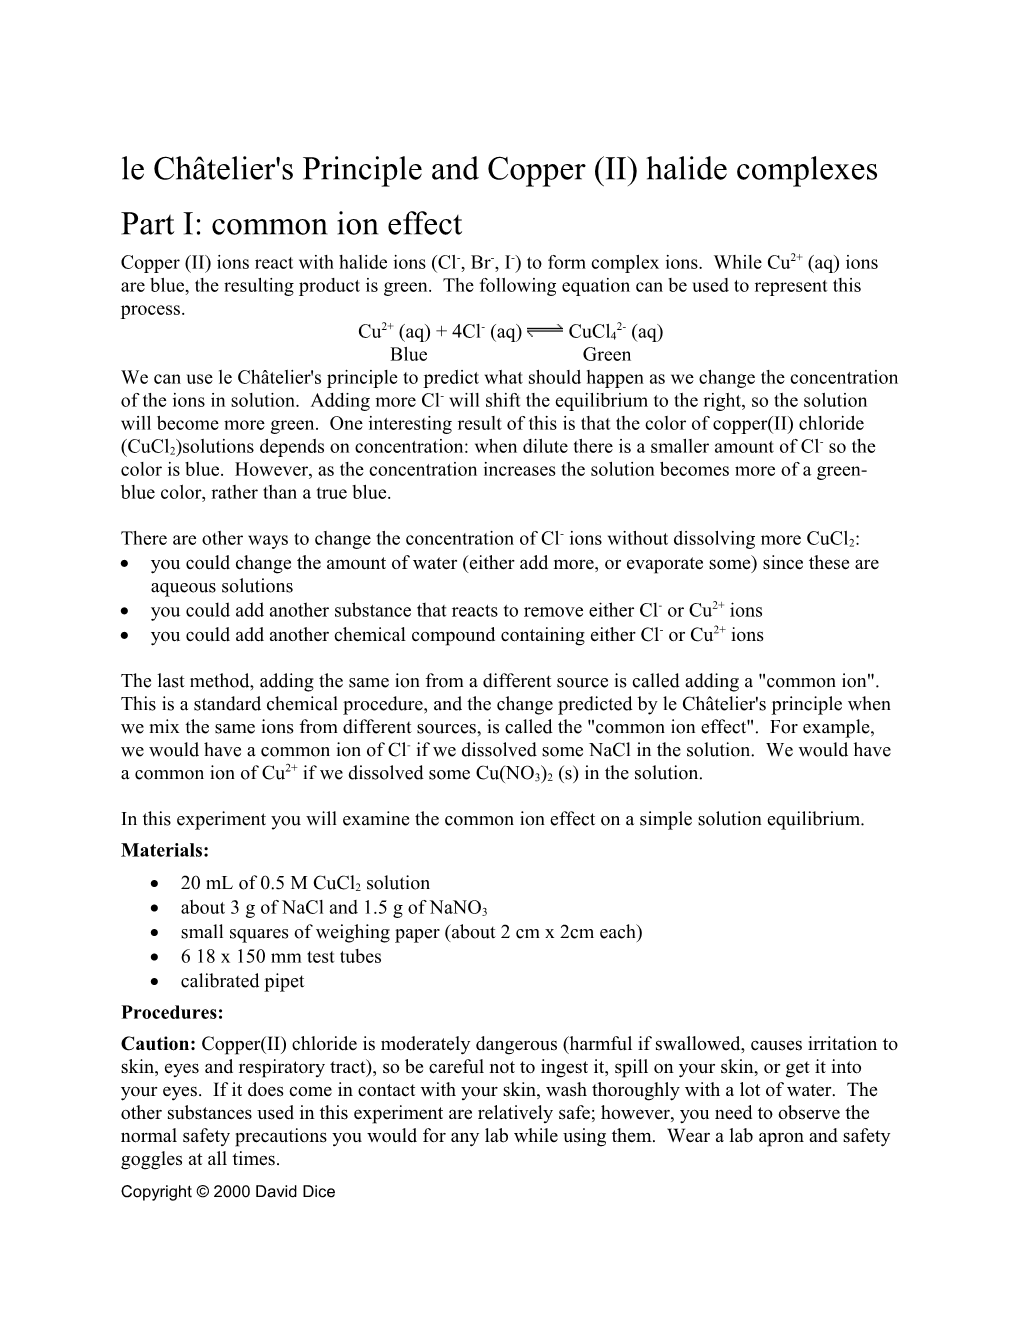 Le Châtelier's Principle: Common Ion Effect